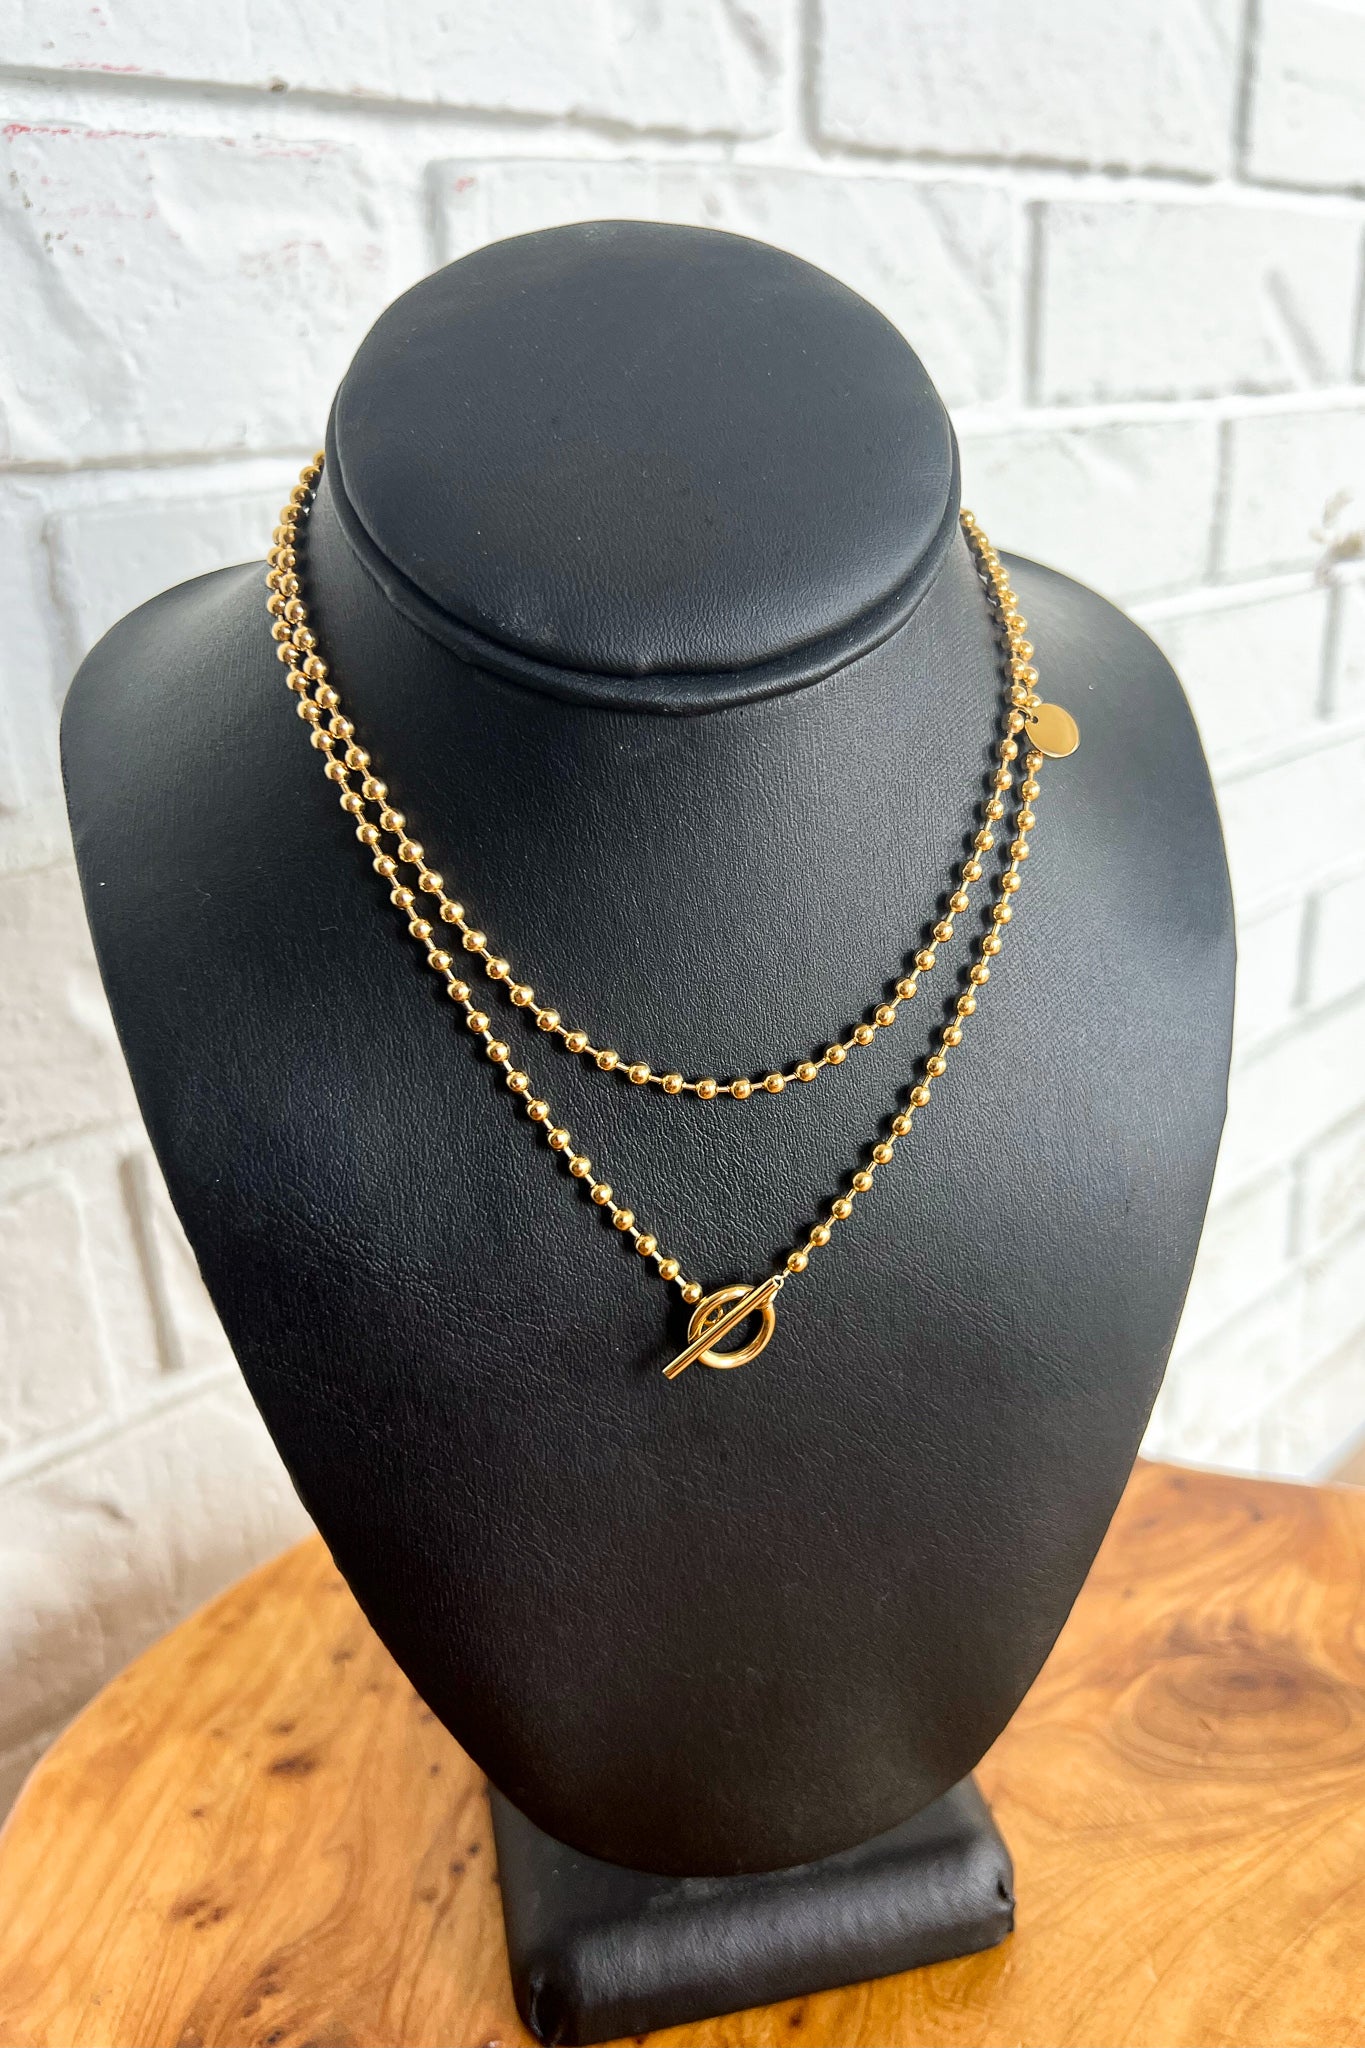 18-karat gold chain necklace